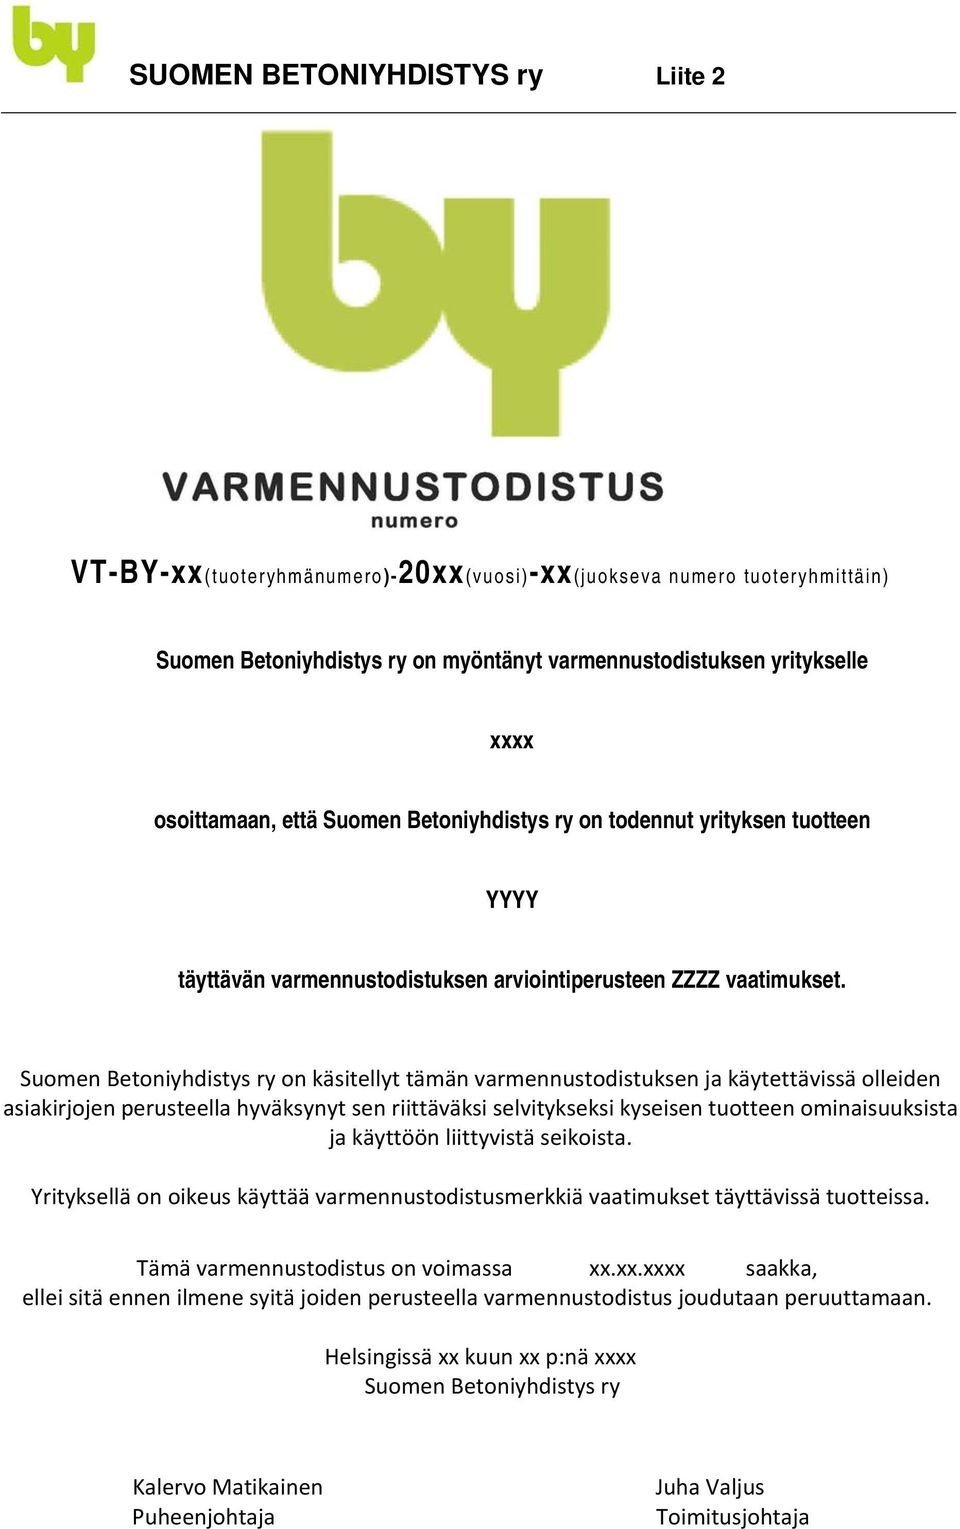 Suomen Betoniyhdistys ry on käsitellyt tämän varmennustodistuksen ja käytettävissä olleiden asiakirjojen perusteella hyväksynyt sen riittäväksi selvitykseksi kyseisen tuotteen ominaisuuksista ja